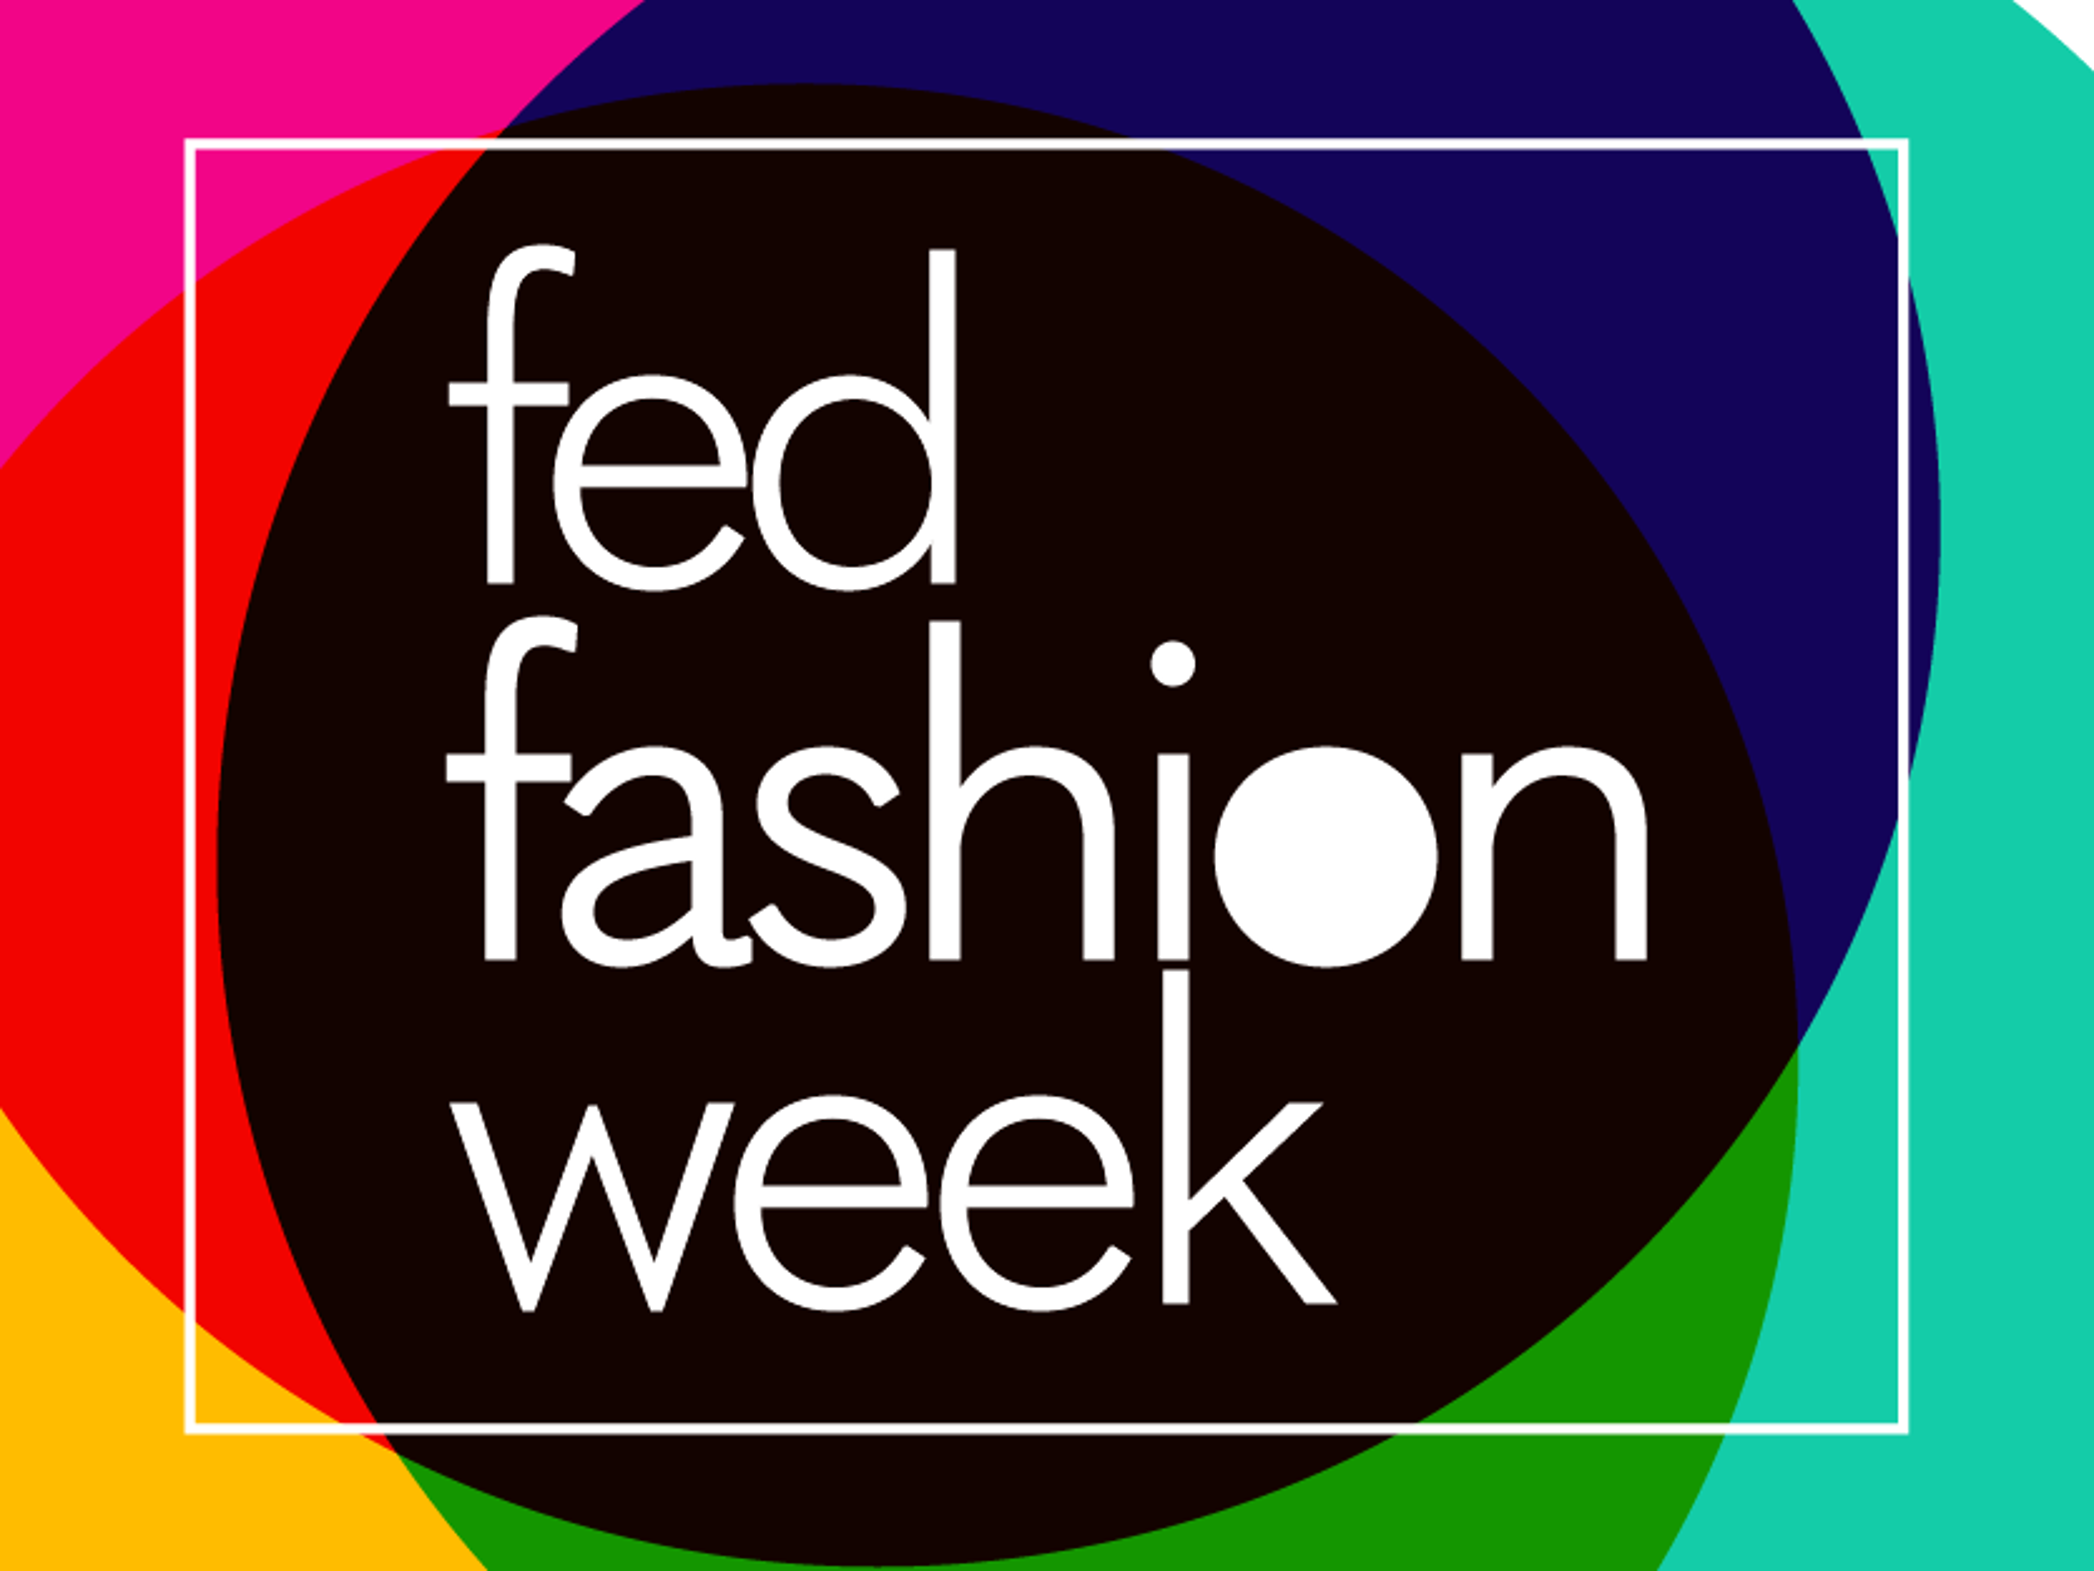 Colorful FedFashionWeek logo